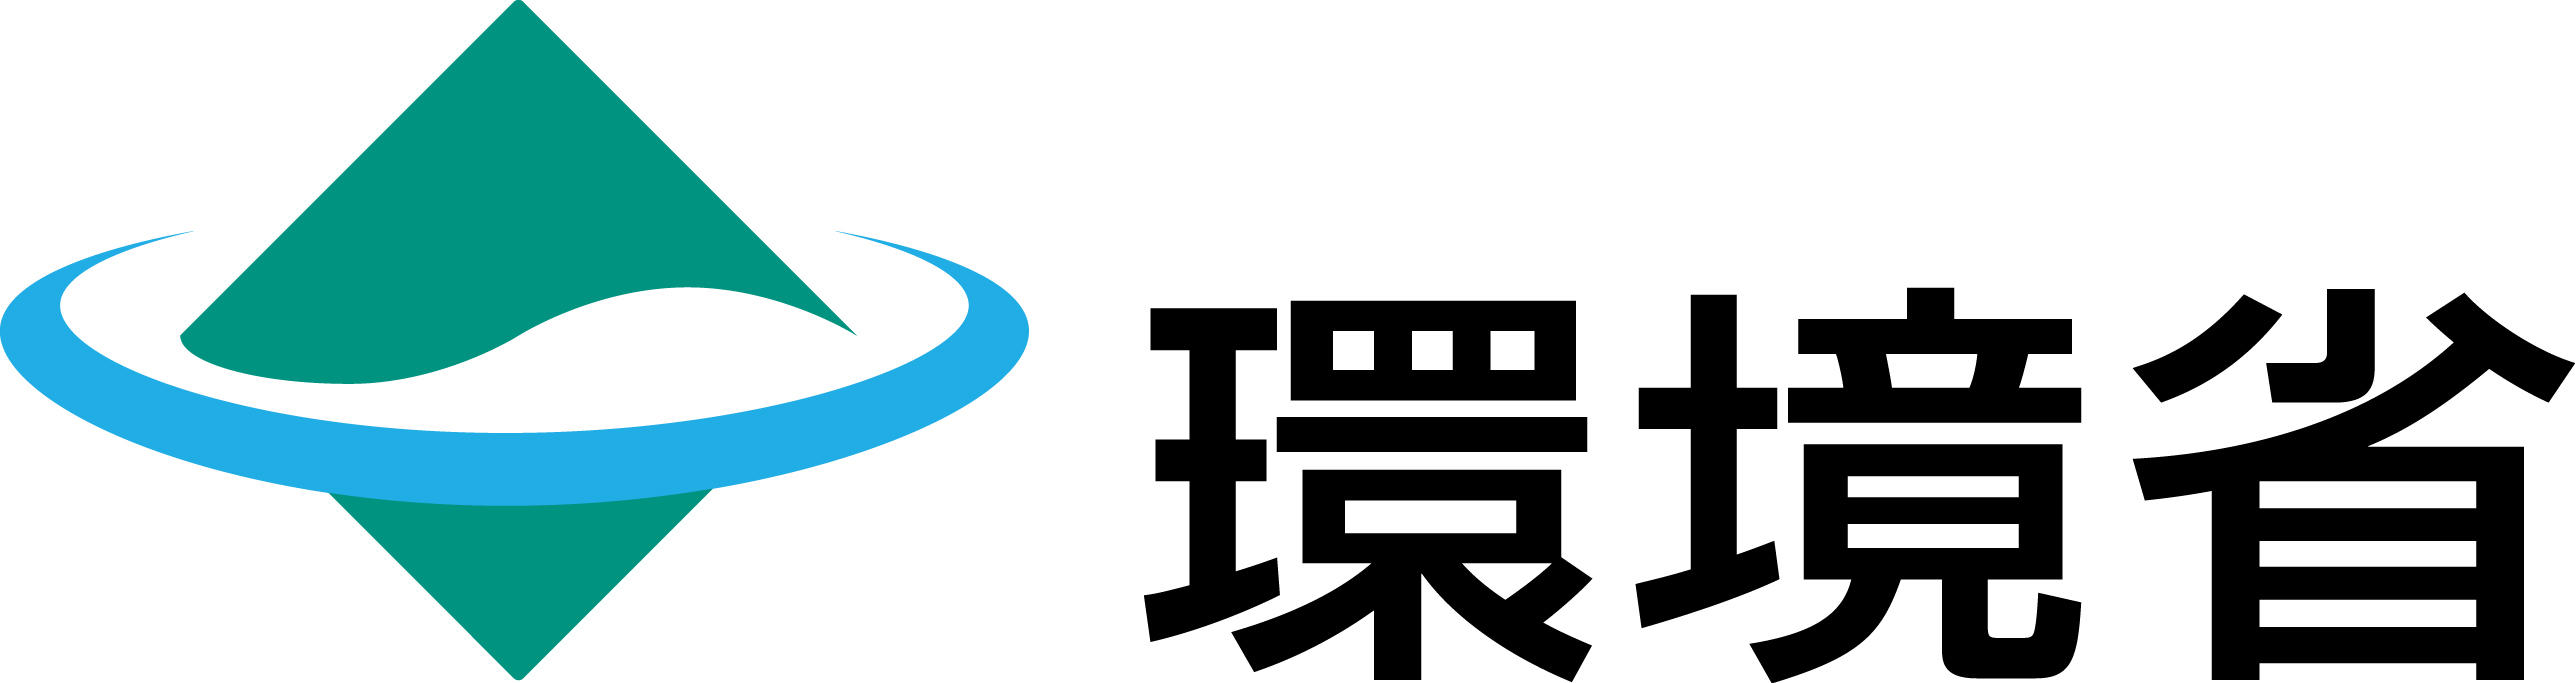 04-01_MOE_logo.jpg